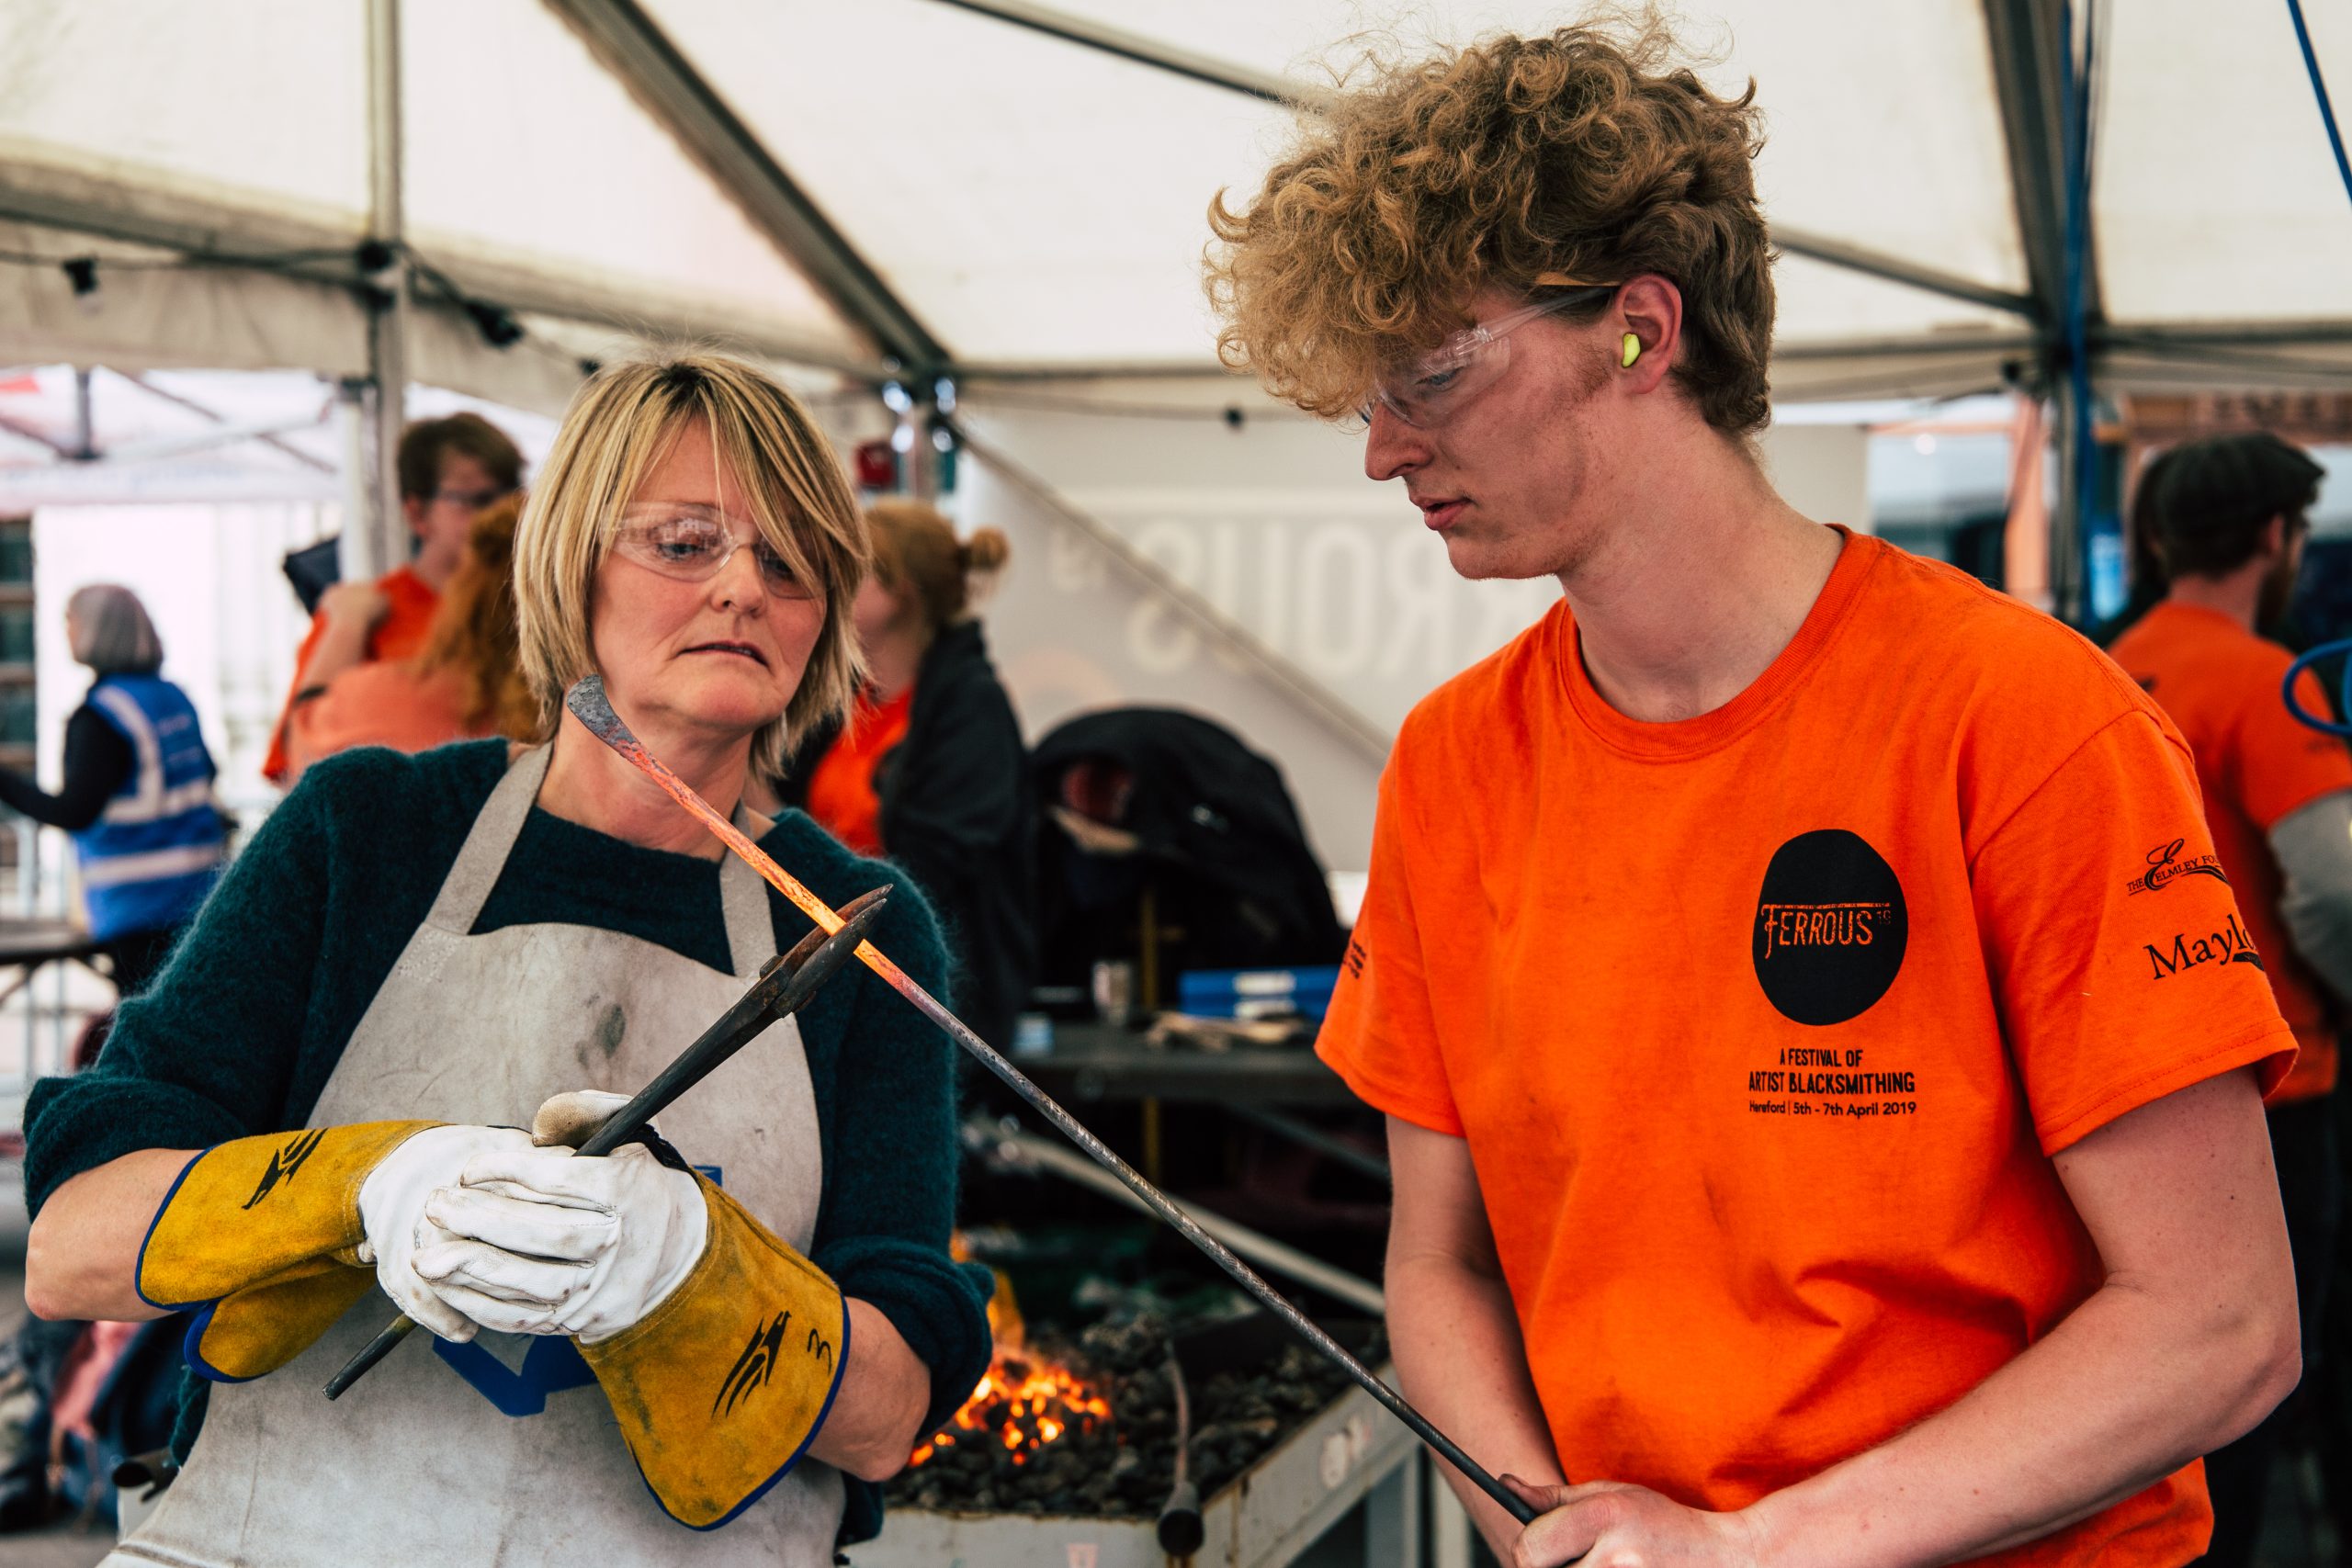 WHAT’S ON? | Ferrous 2022 – International Artist Blacksmithing Festival in Hereford